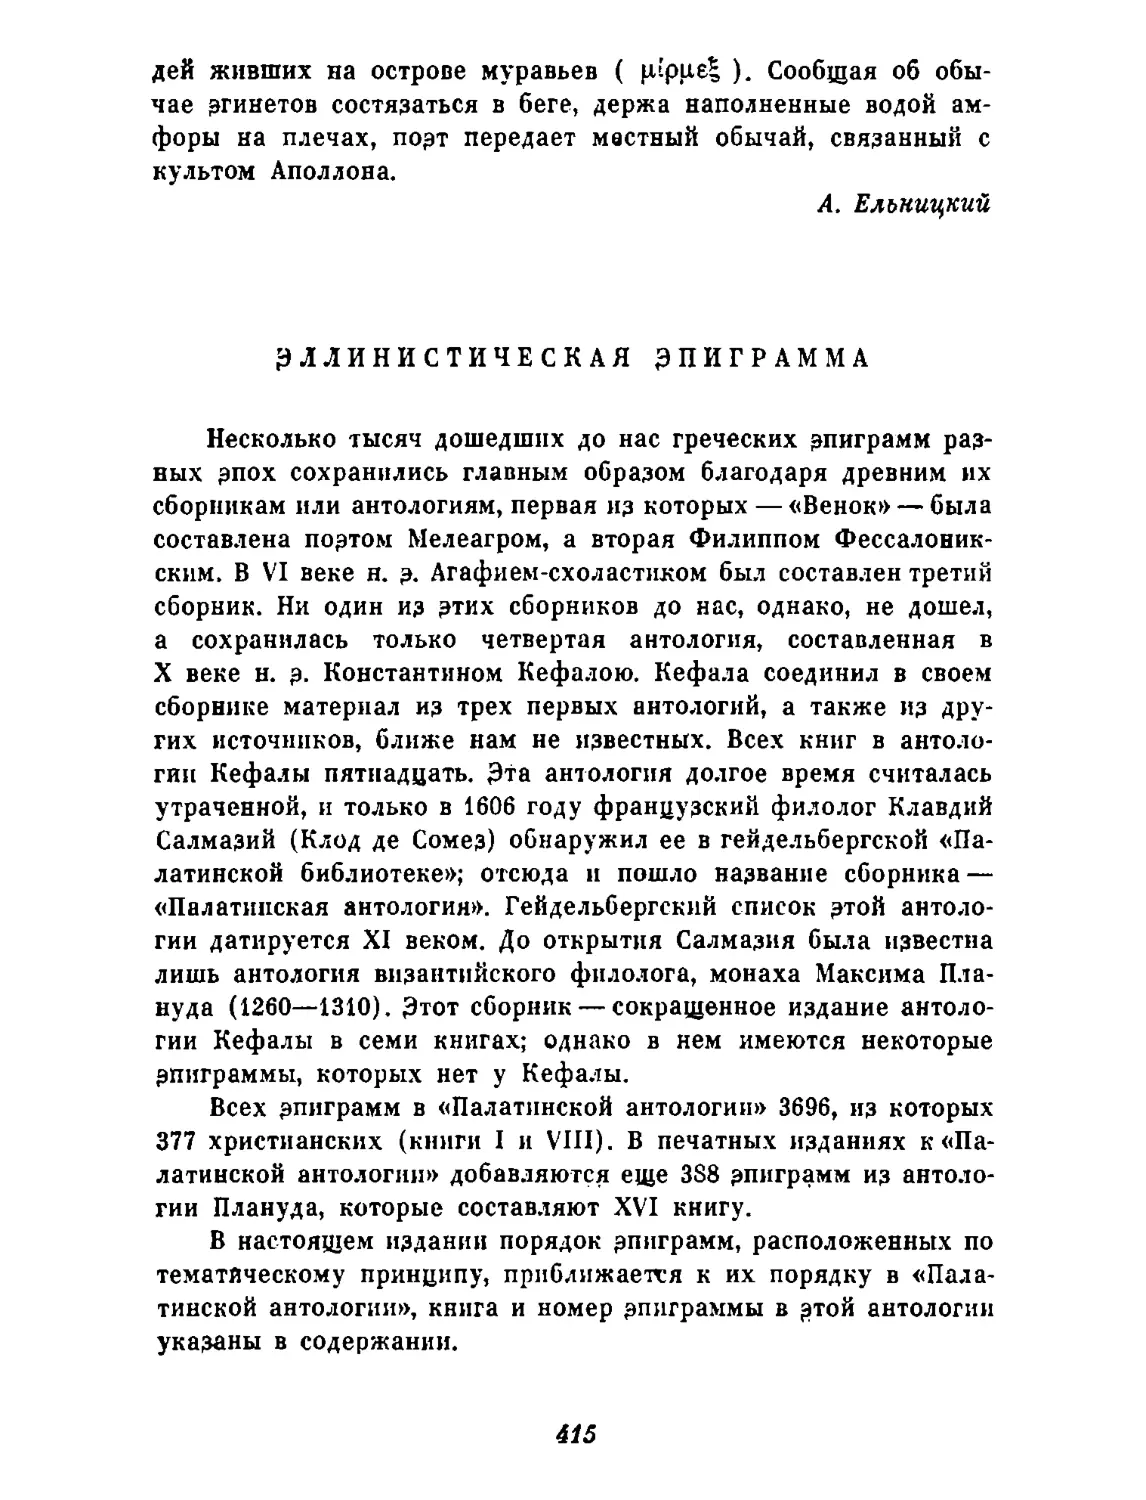 Эллинистическая эпиграмма (Ф. Петровский, Ю. Шульц)